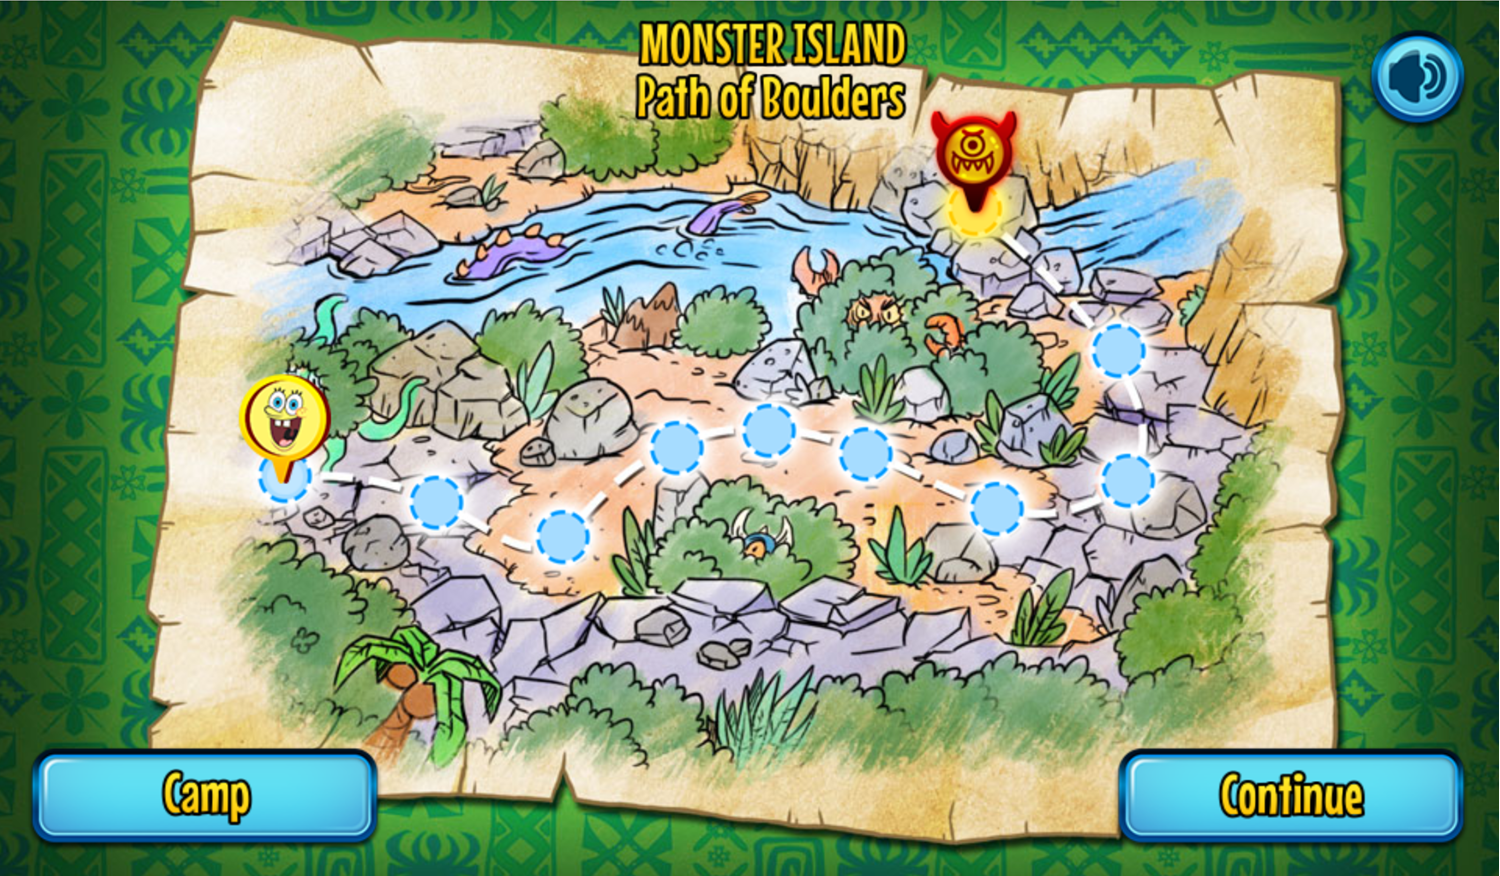 SpongeBob SquarePants Monster Island Adventure Game Path of Boulders Map Screen Screenshot.